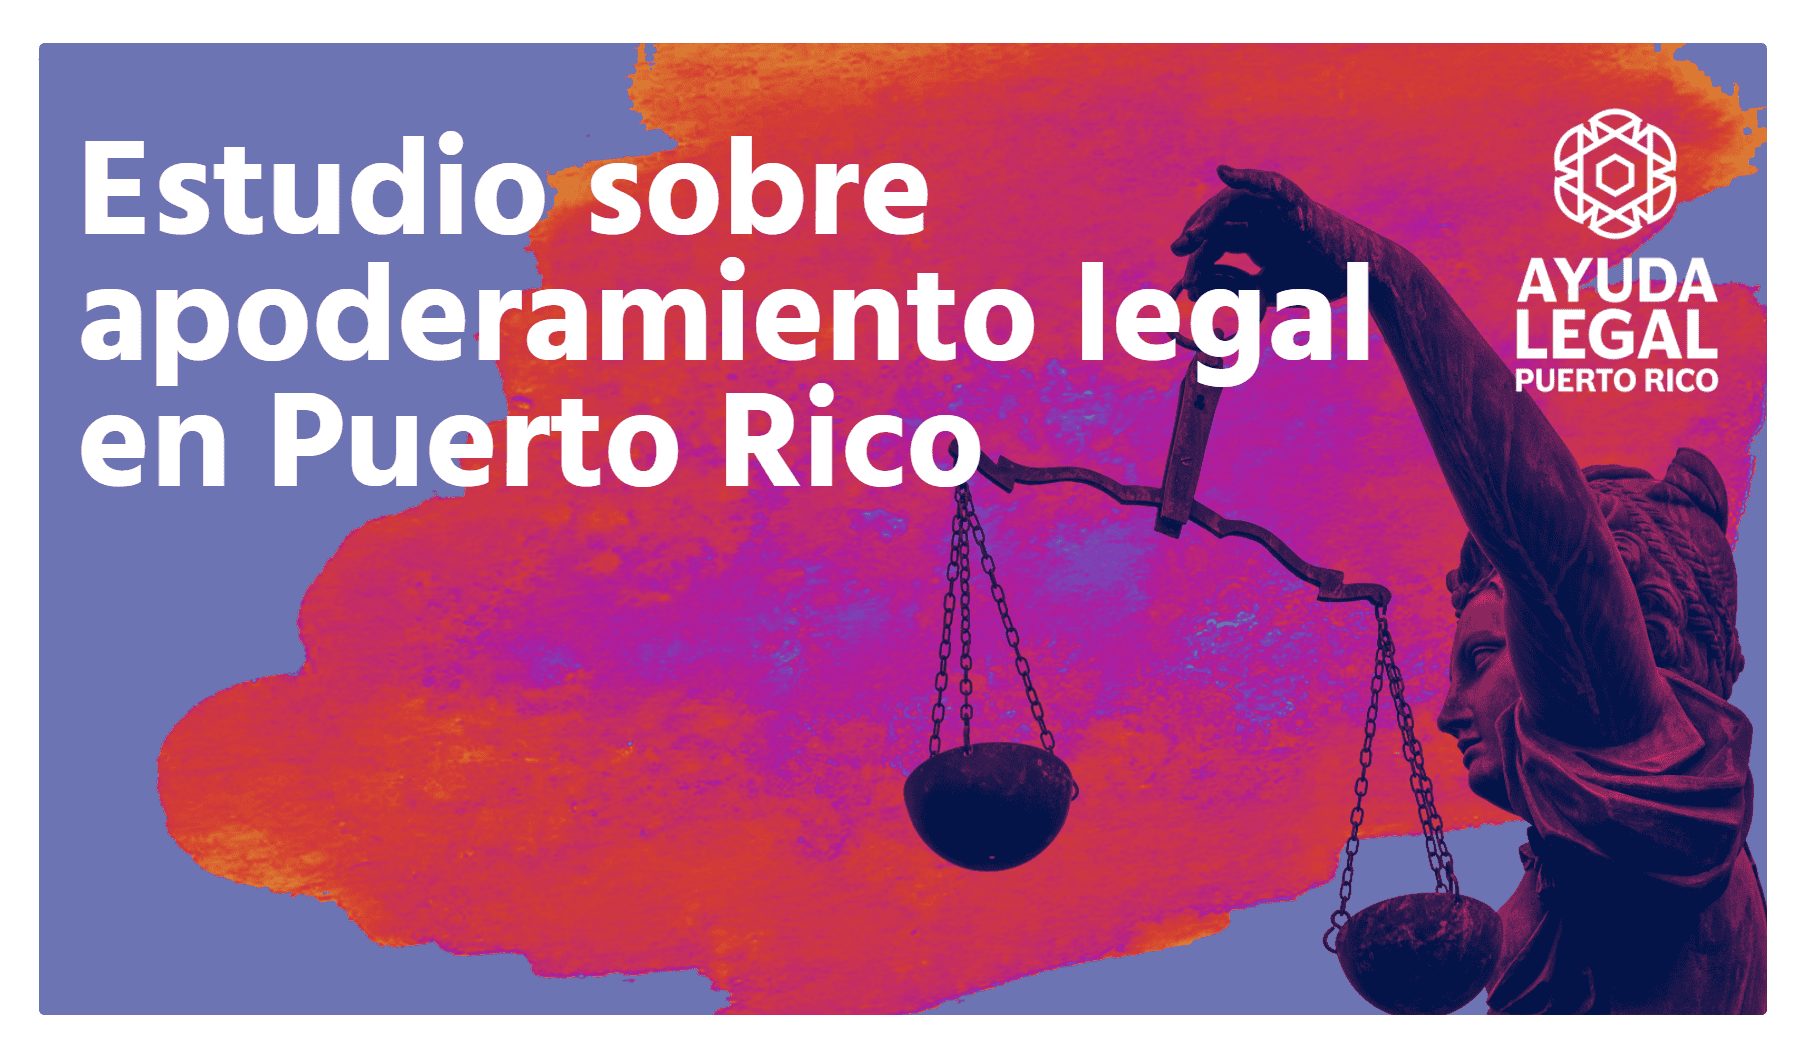 Enlace para descargar el estudio de apoderamiento legal en español. Link to download the spanish language version of the study.